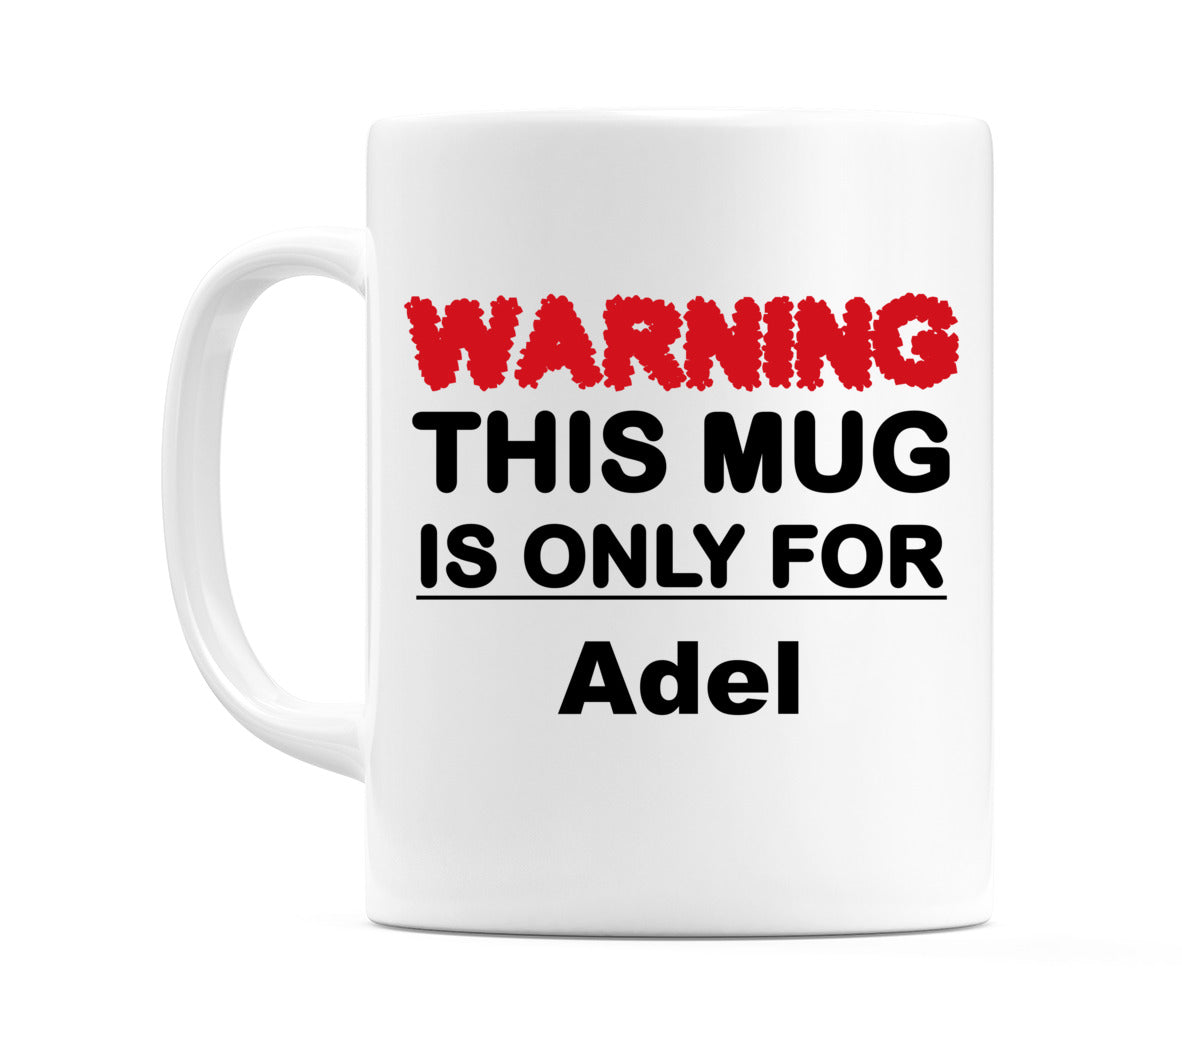 Warning This Mug is ONLY for Adel Mug